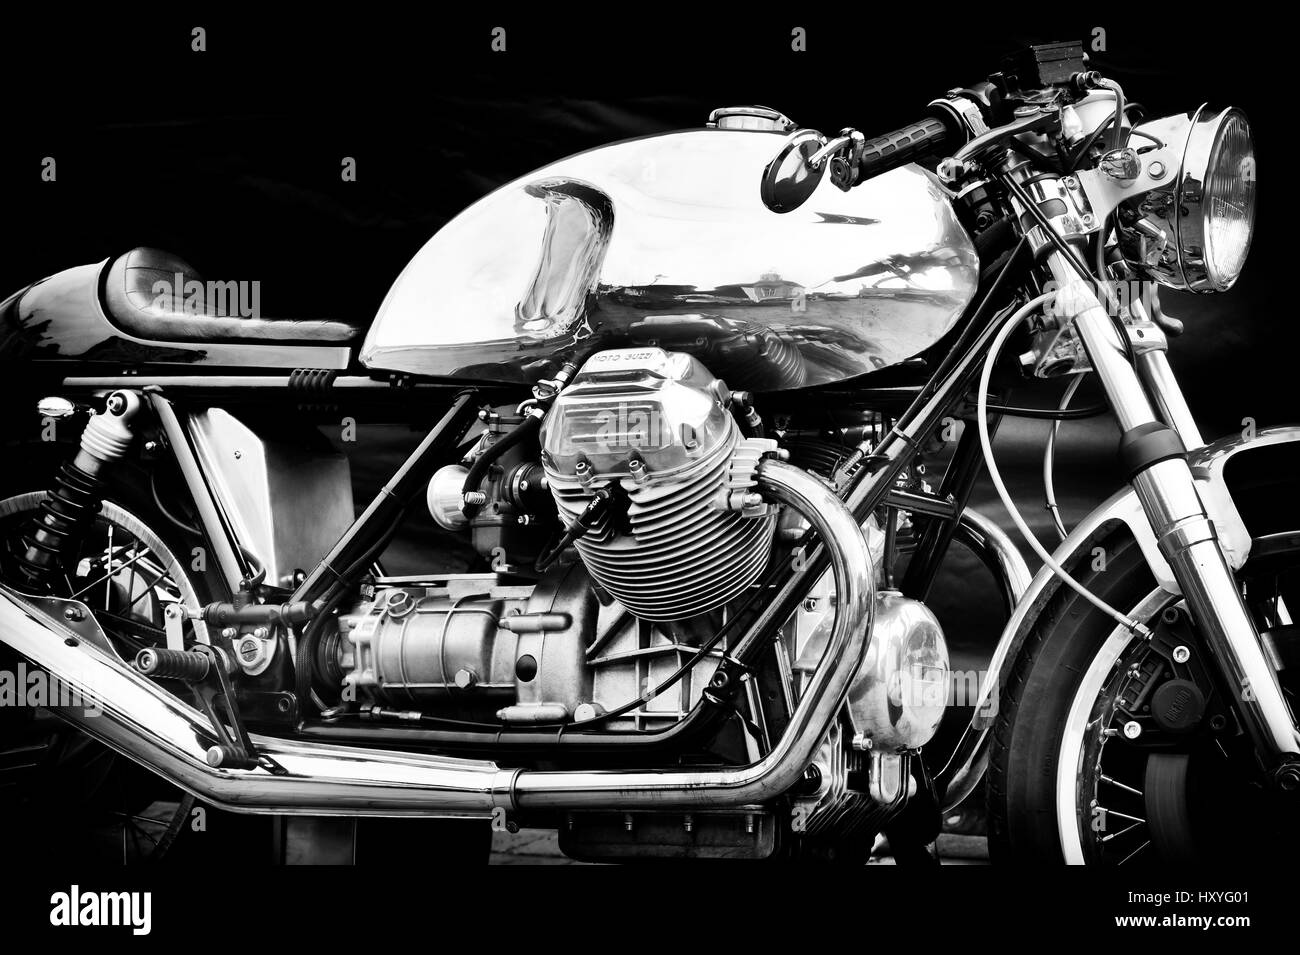 Moto Guzzi café racer moto. Moto italienne classique. Le noir et blanc  Photo Stock - Alamy